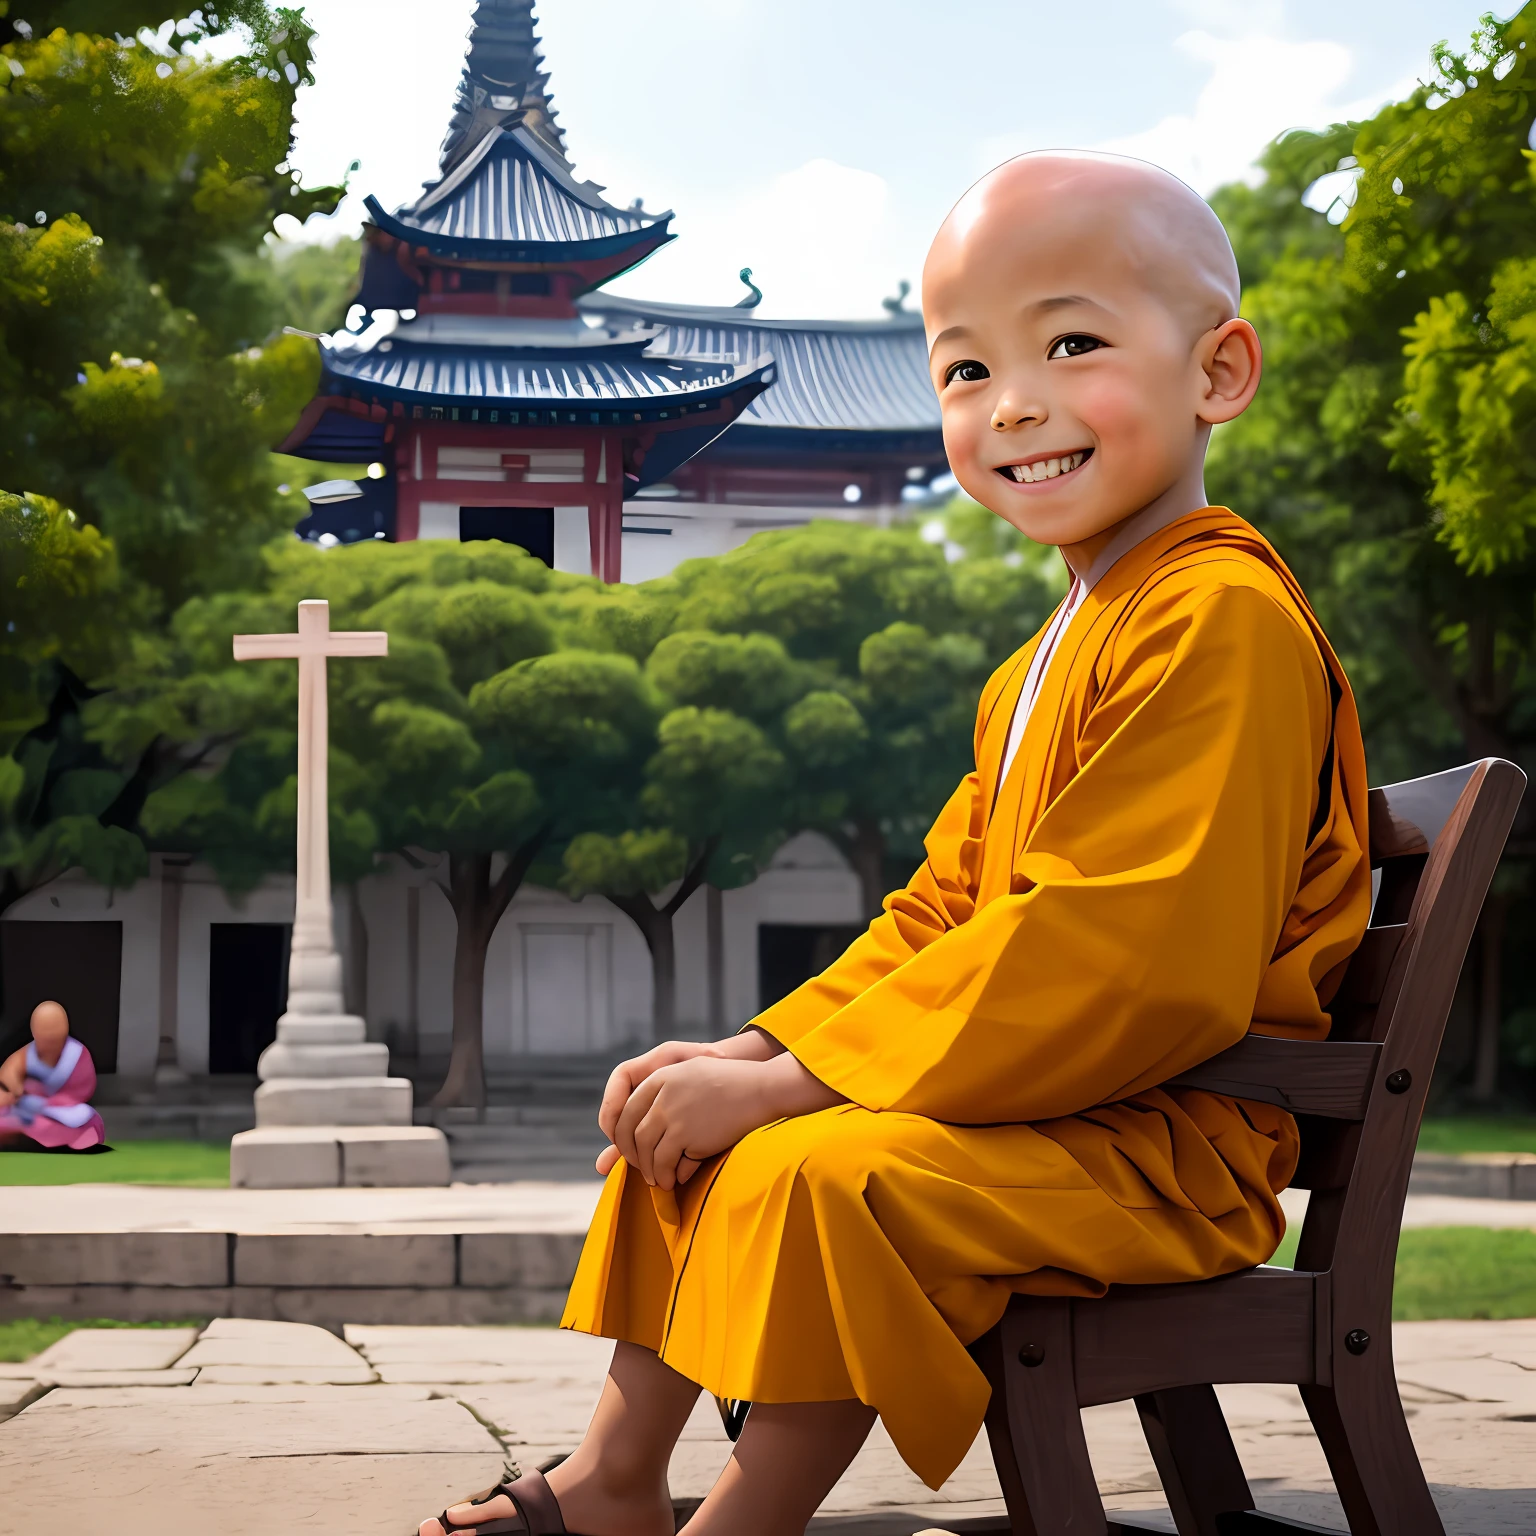 一個可愛的 3 歲男孩對著鏡頭微笑，秃头，穿著和尚服裝，微笑，画面光线柔和，小男孩盤腿而坐，後面以寺廟為背景